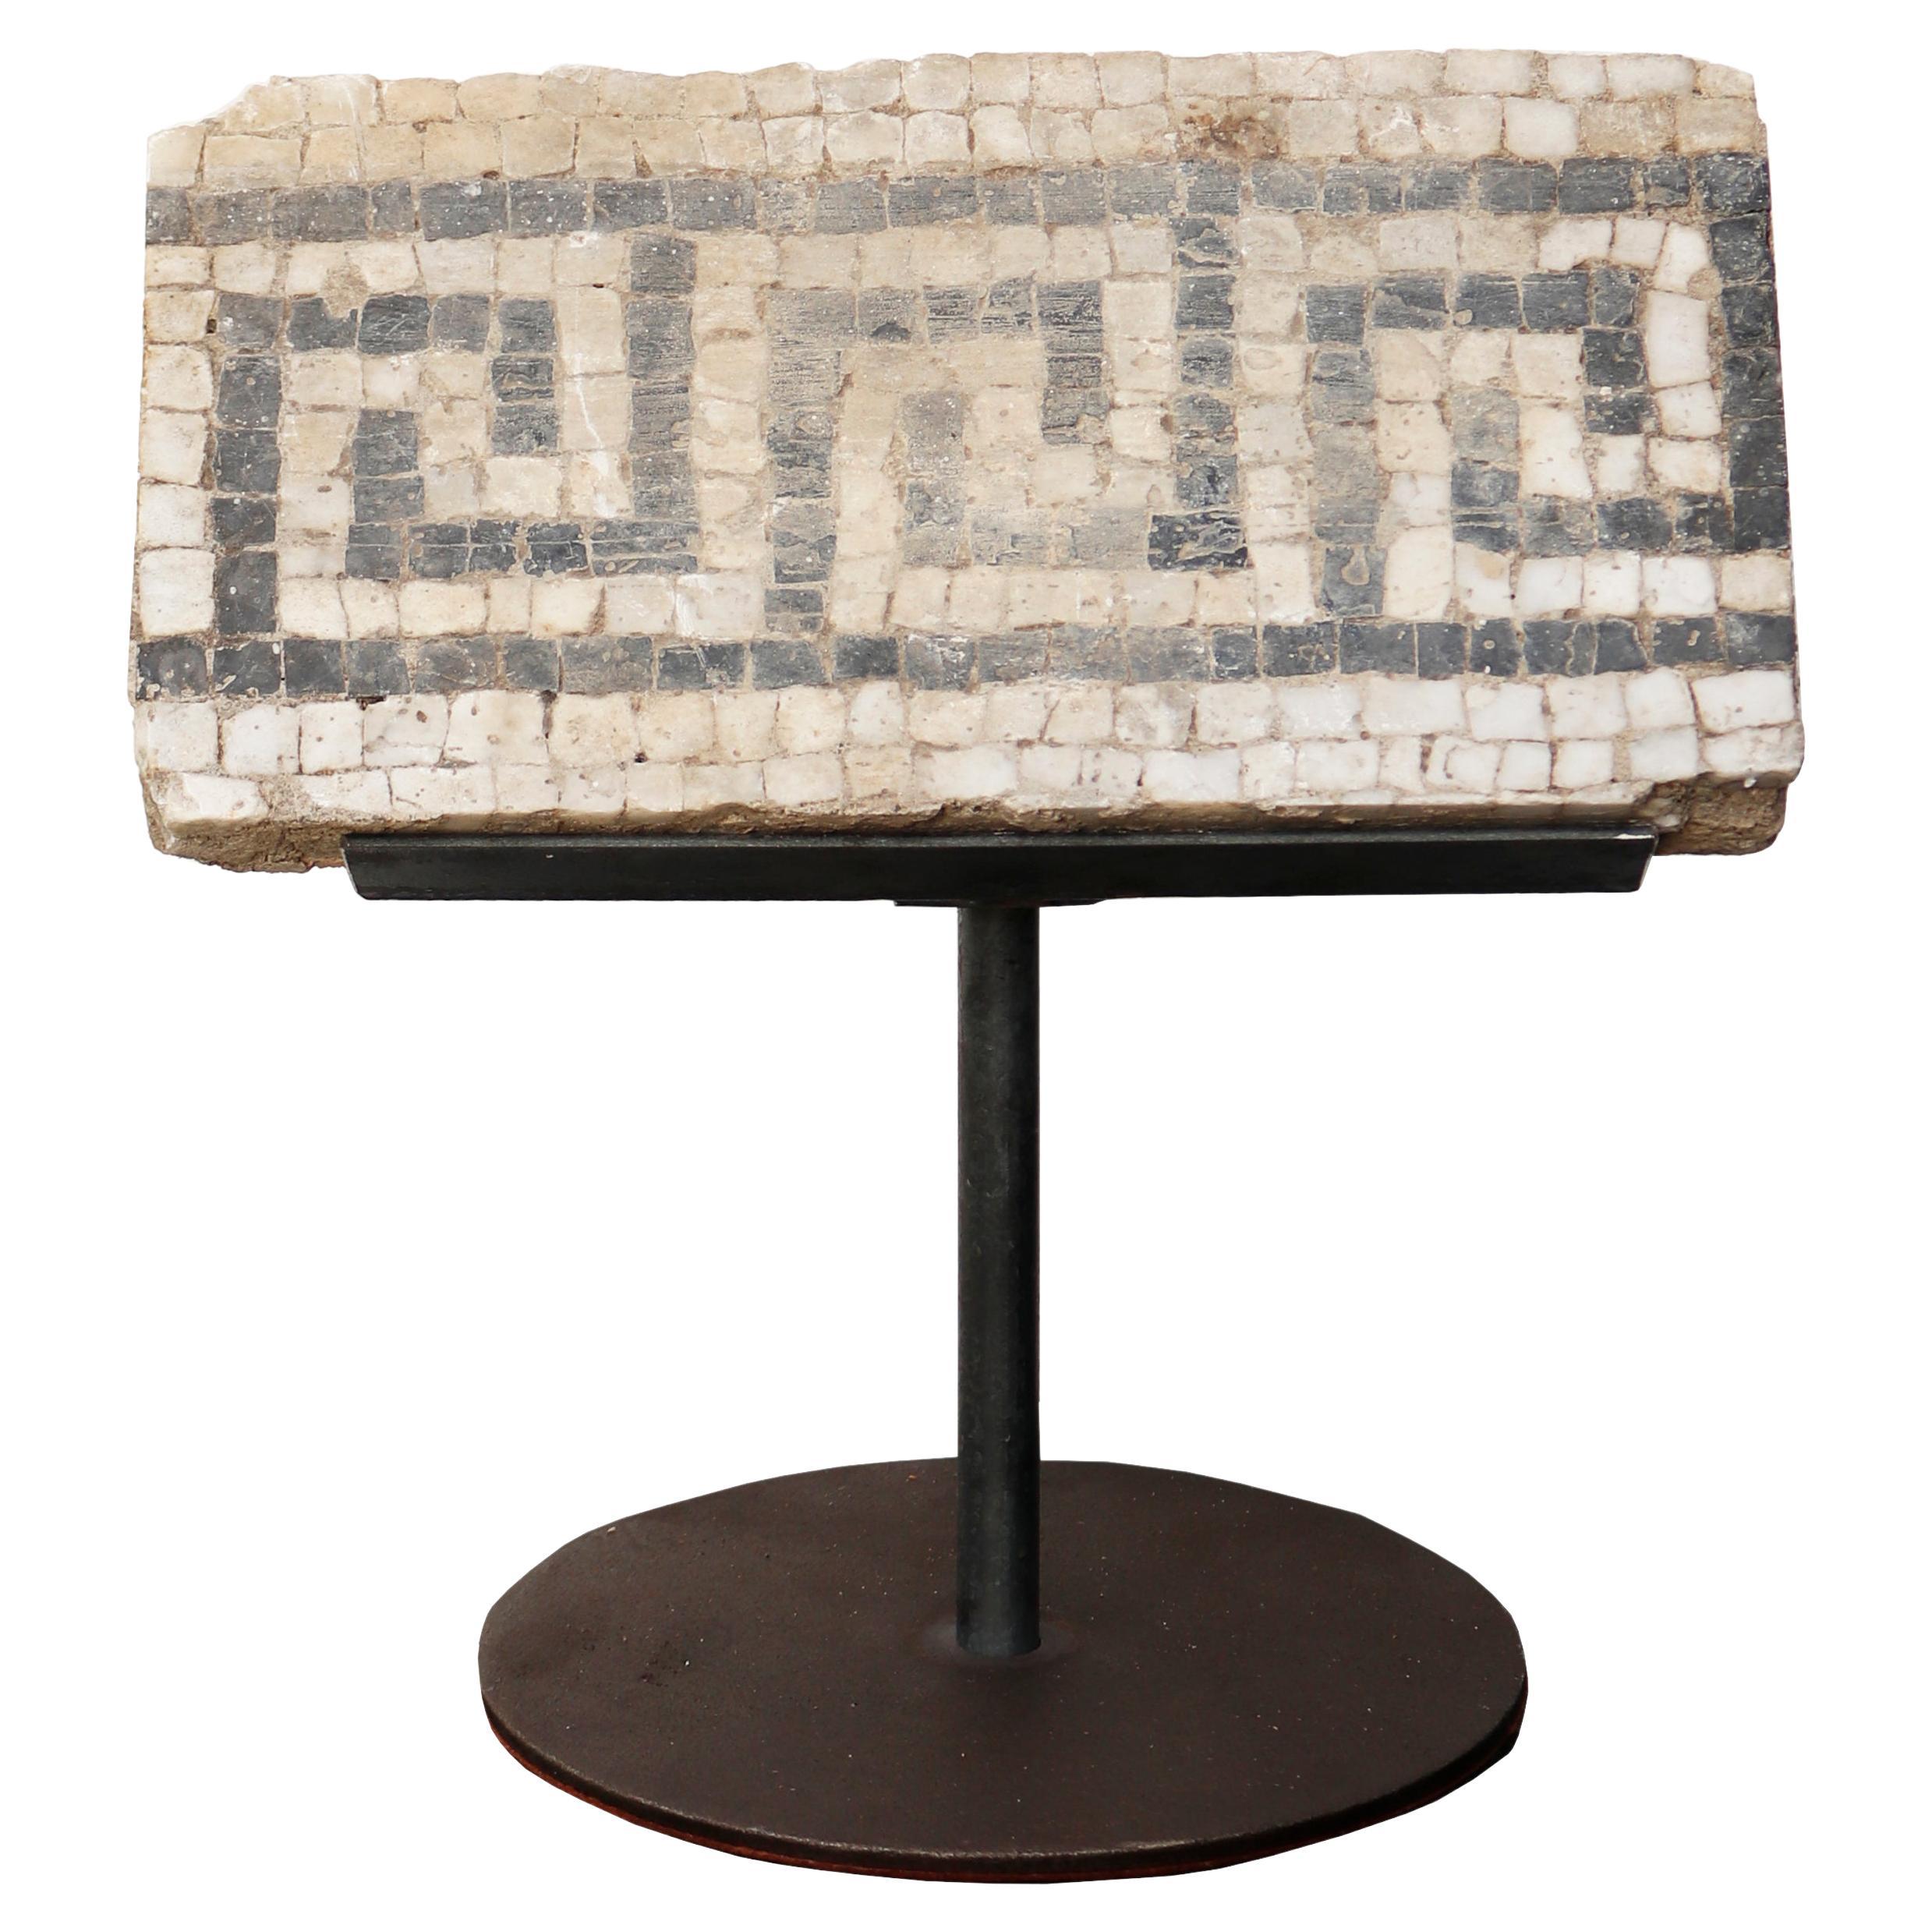 Fragment de sol en mosaïque de style romain récupéré sur Stand